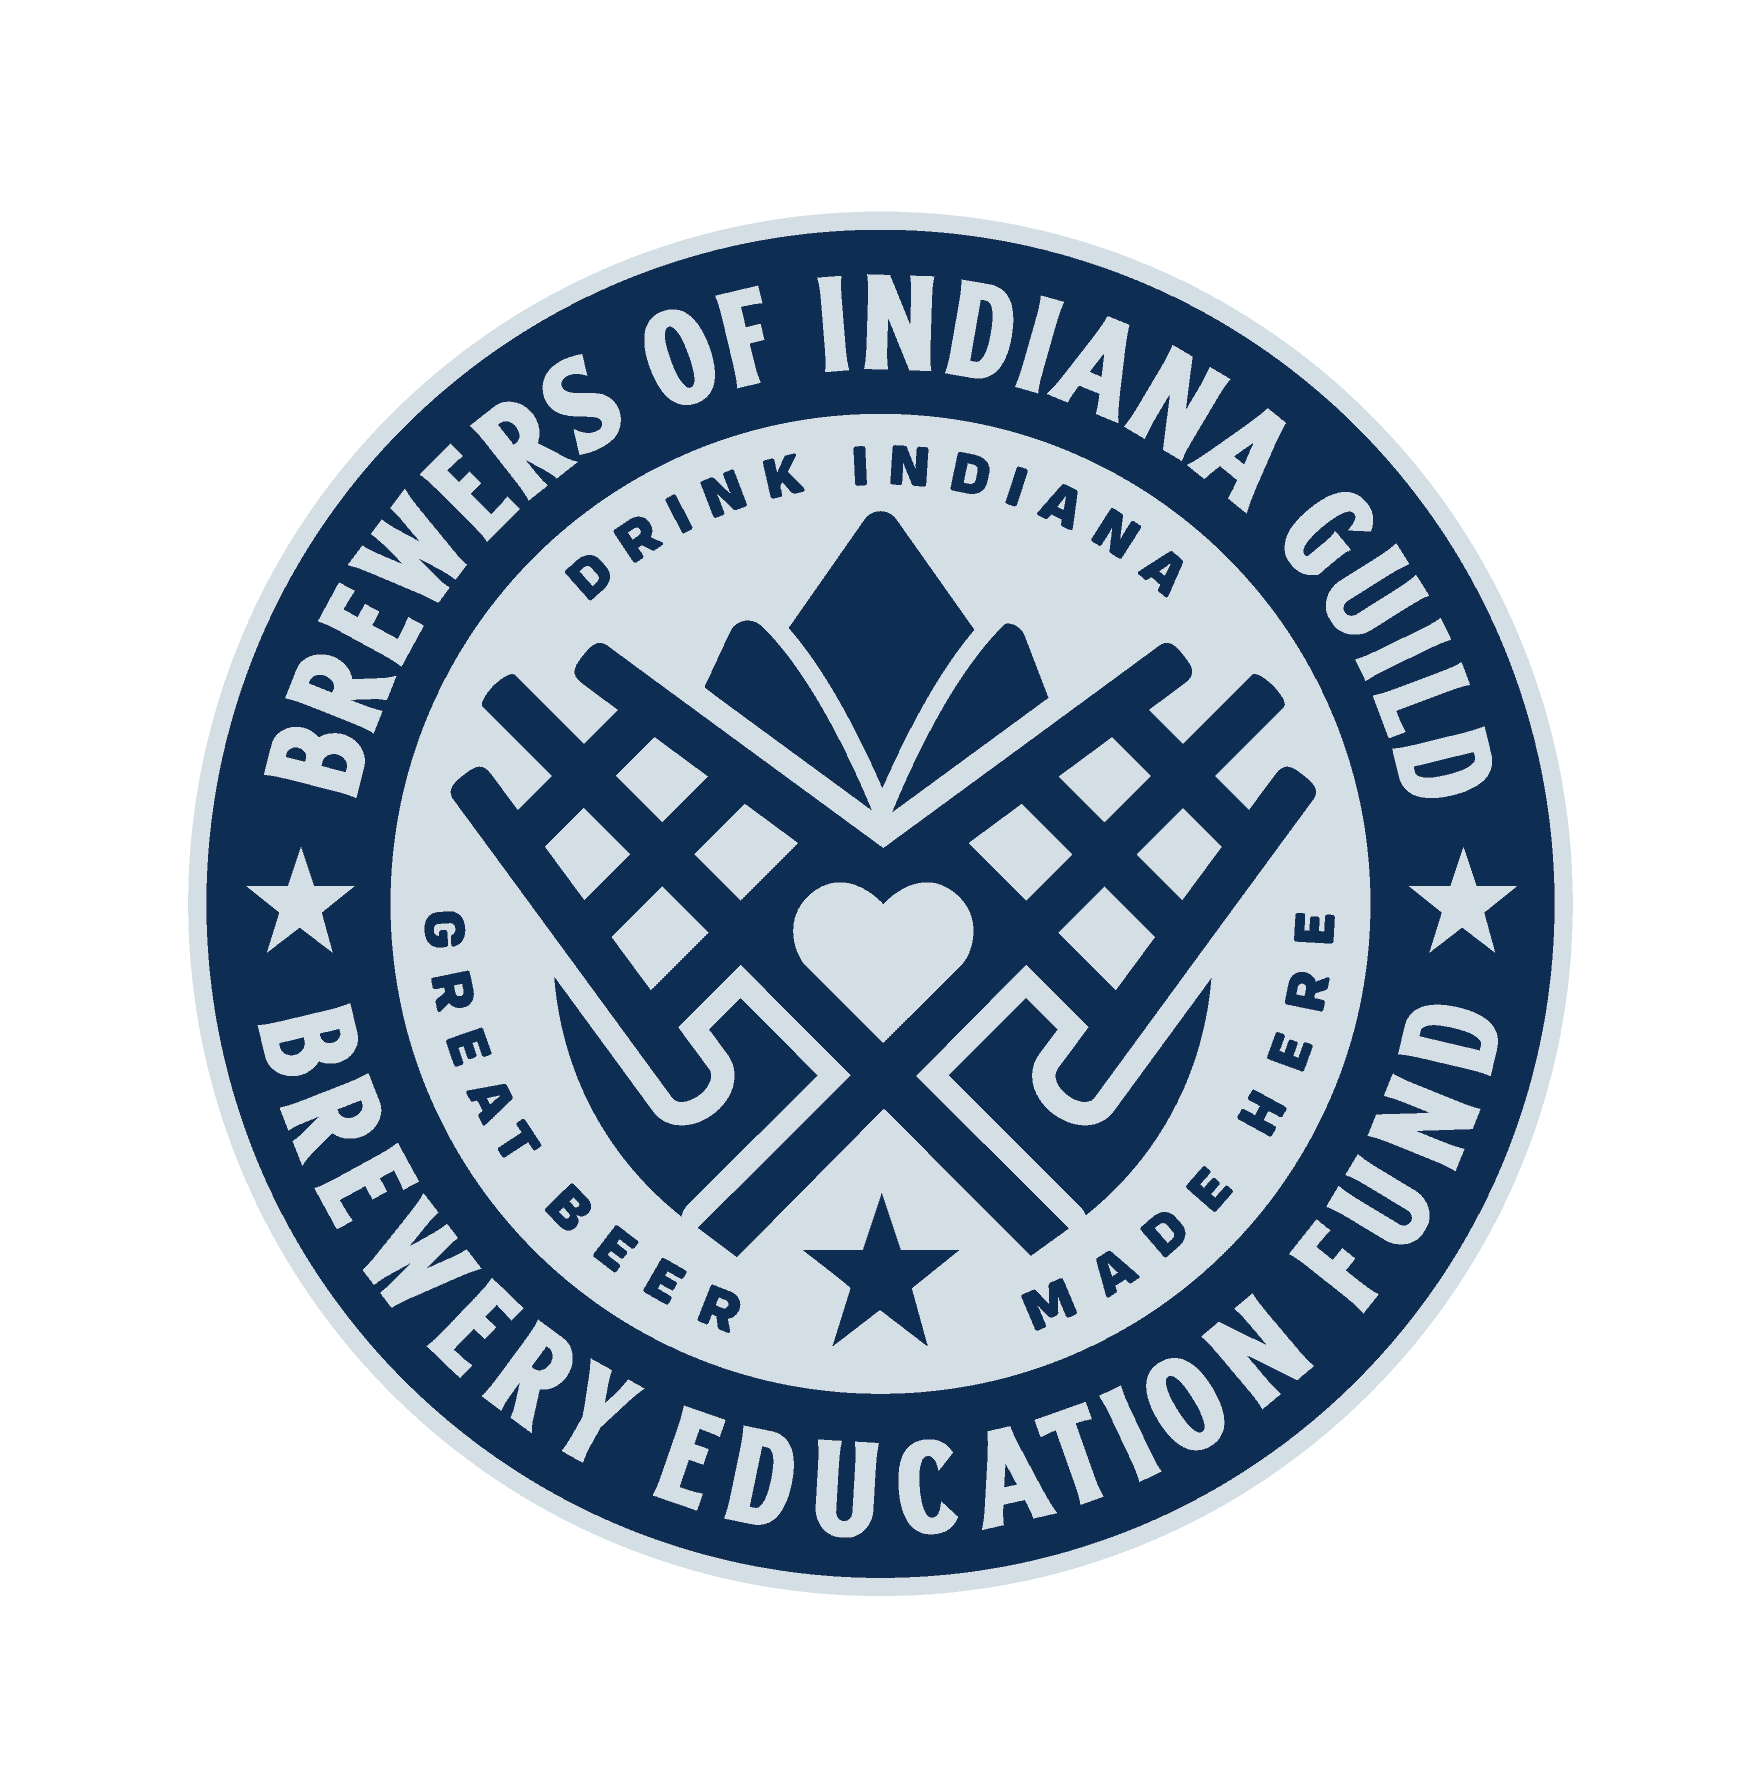 Brewery Education Fund Logo